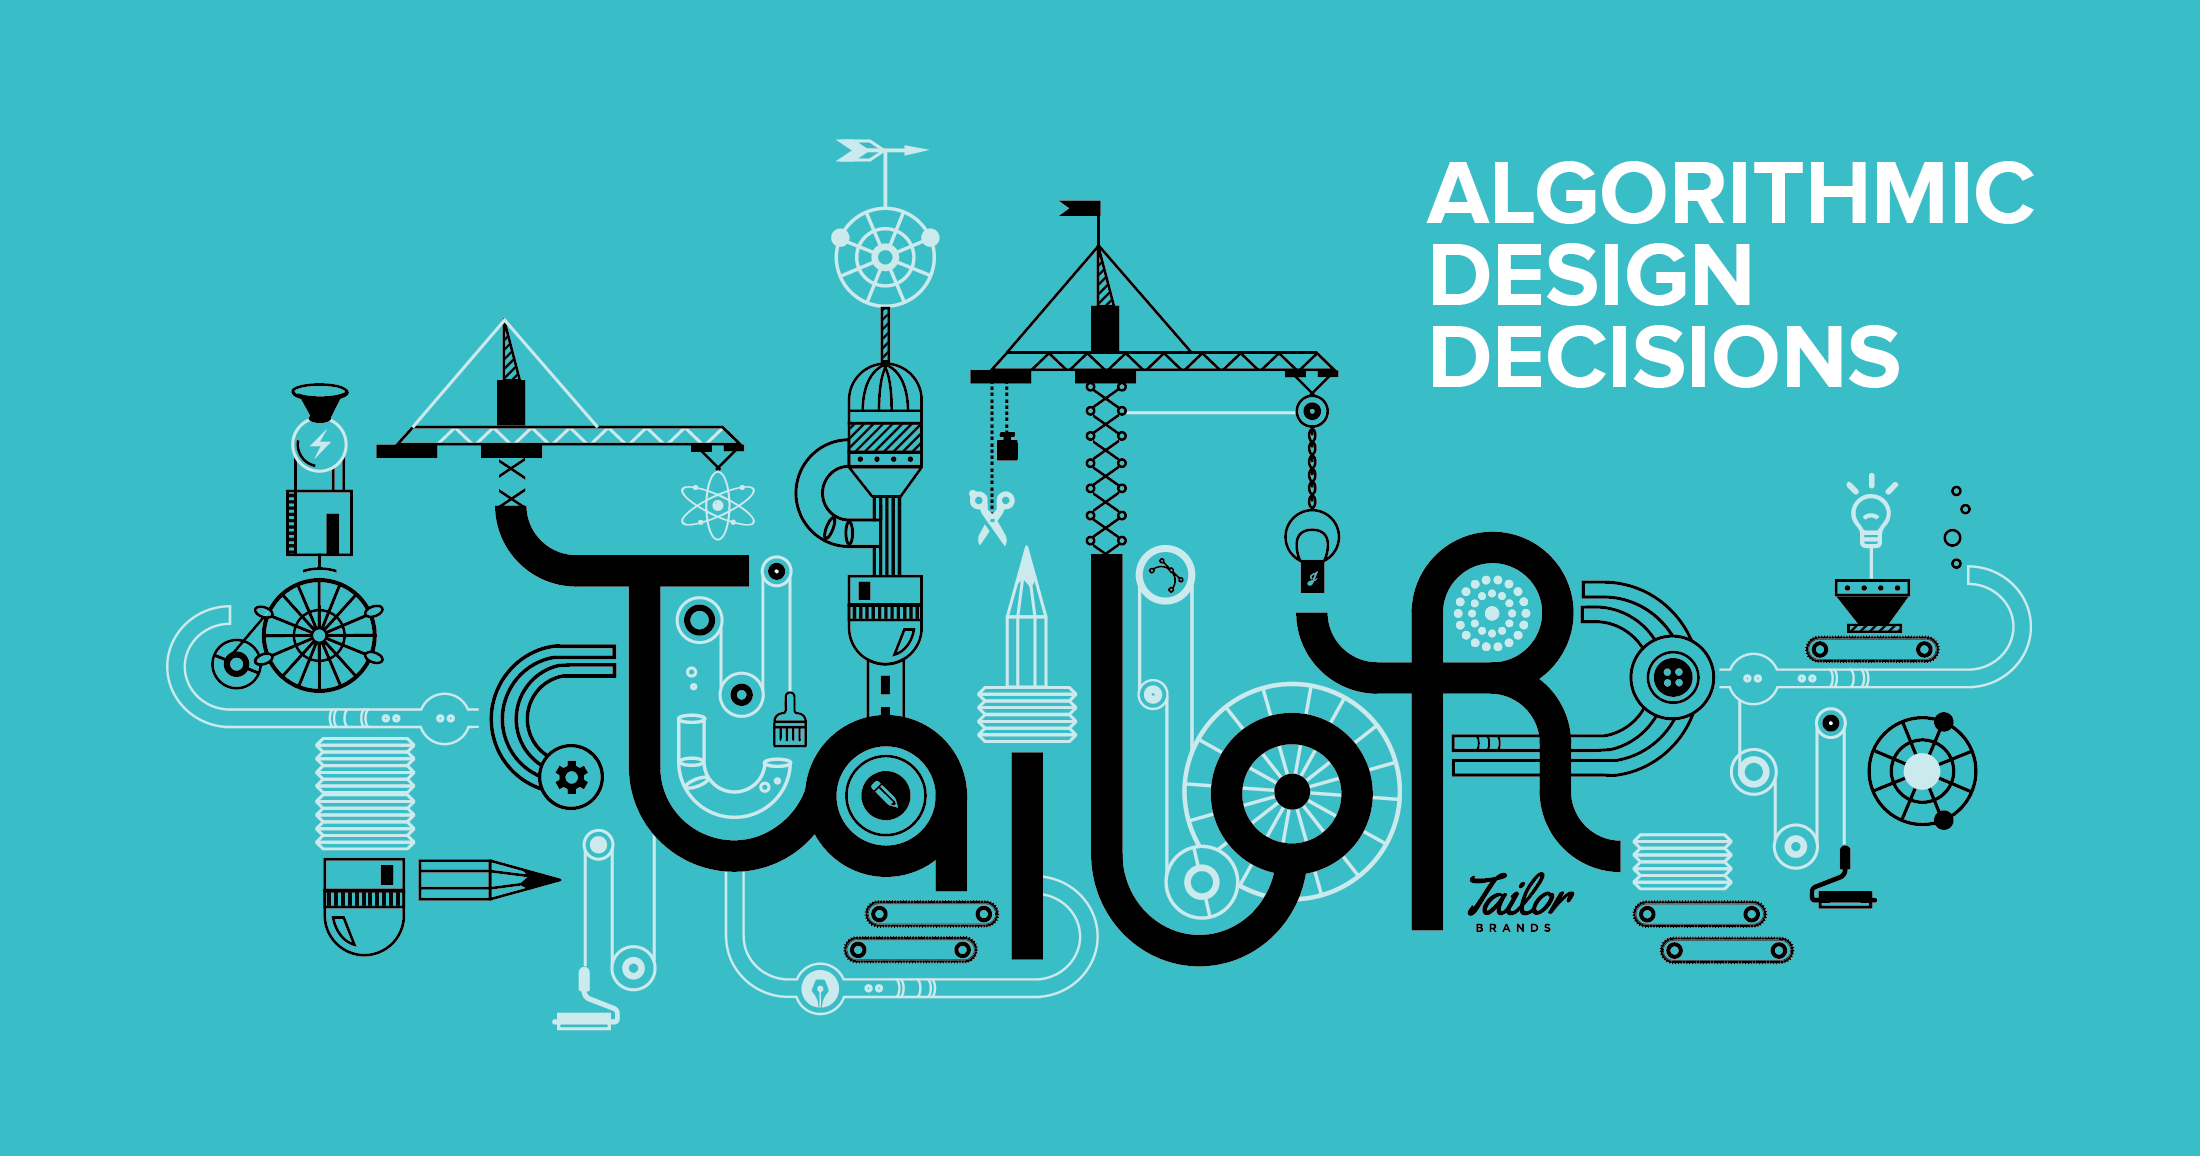 Blog Header Image for "Algorithmic Design Decisions"